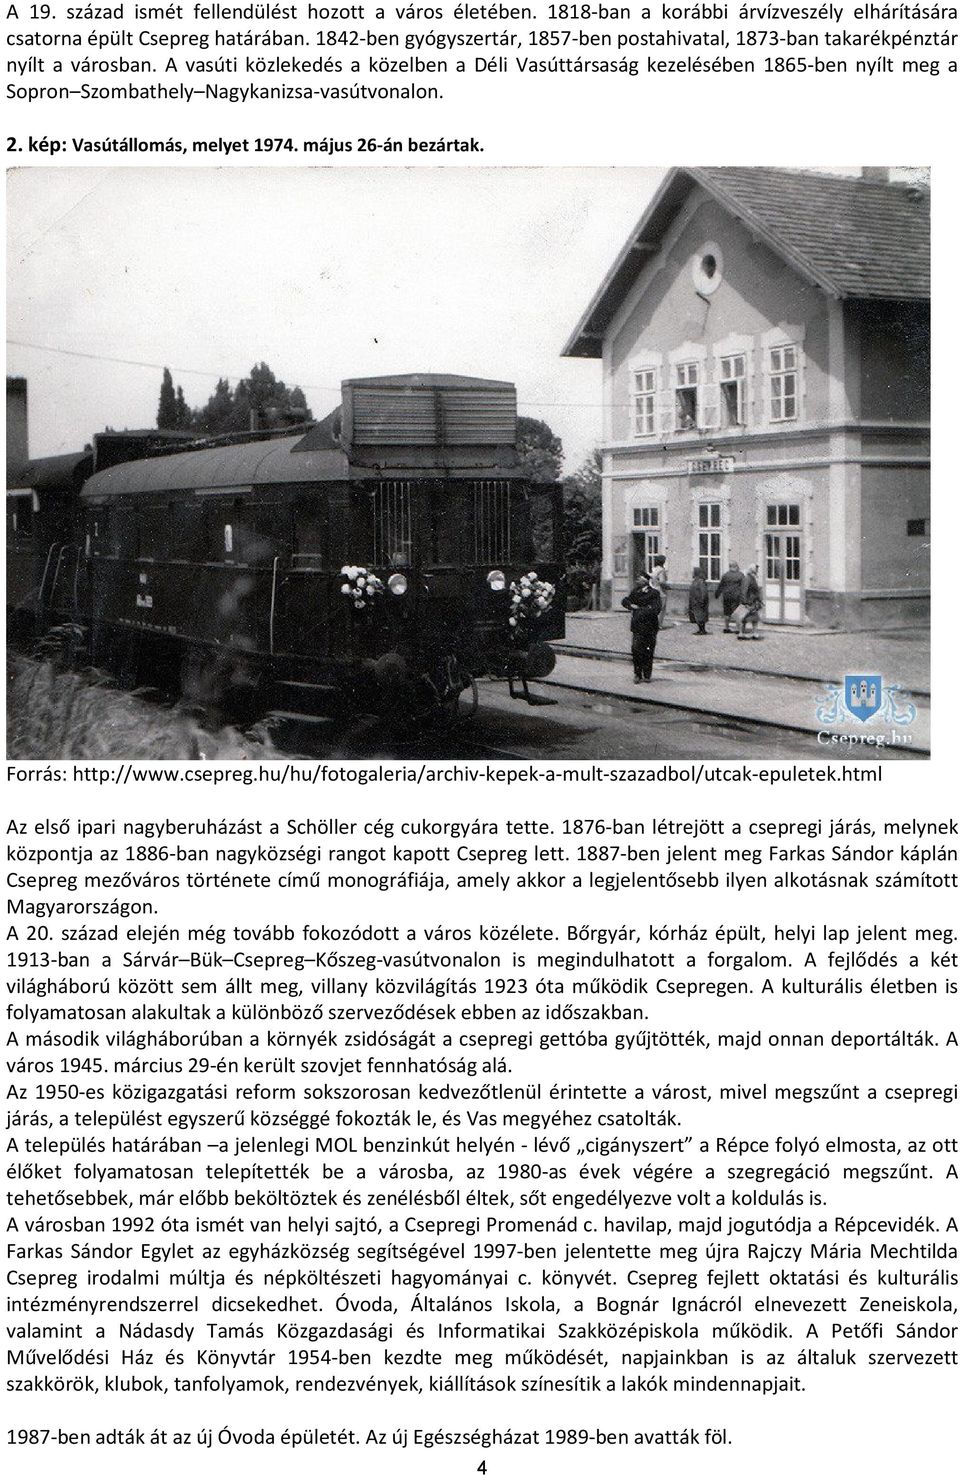 A vasúti közlekedés a közelben a Déli Vasúttársaság kezelésében 1865-ben nyílt meg a Sopron Szombathely Nagykanizsa-vasútvonalon. 2. kép: Vasútállomás, melyet 1974. május 26-án bezártak.